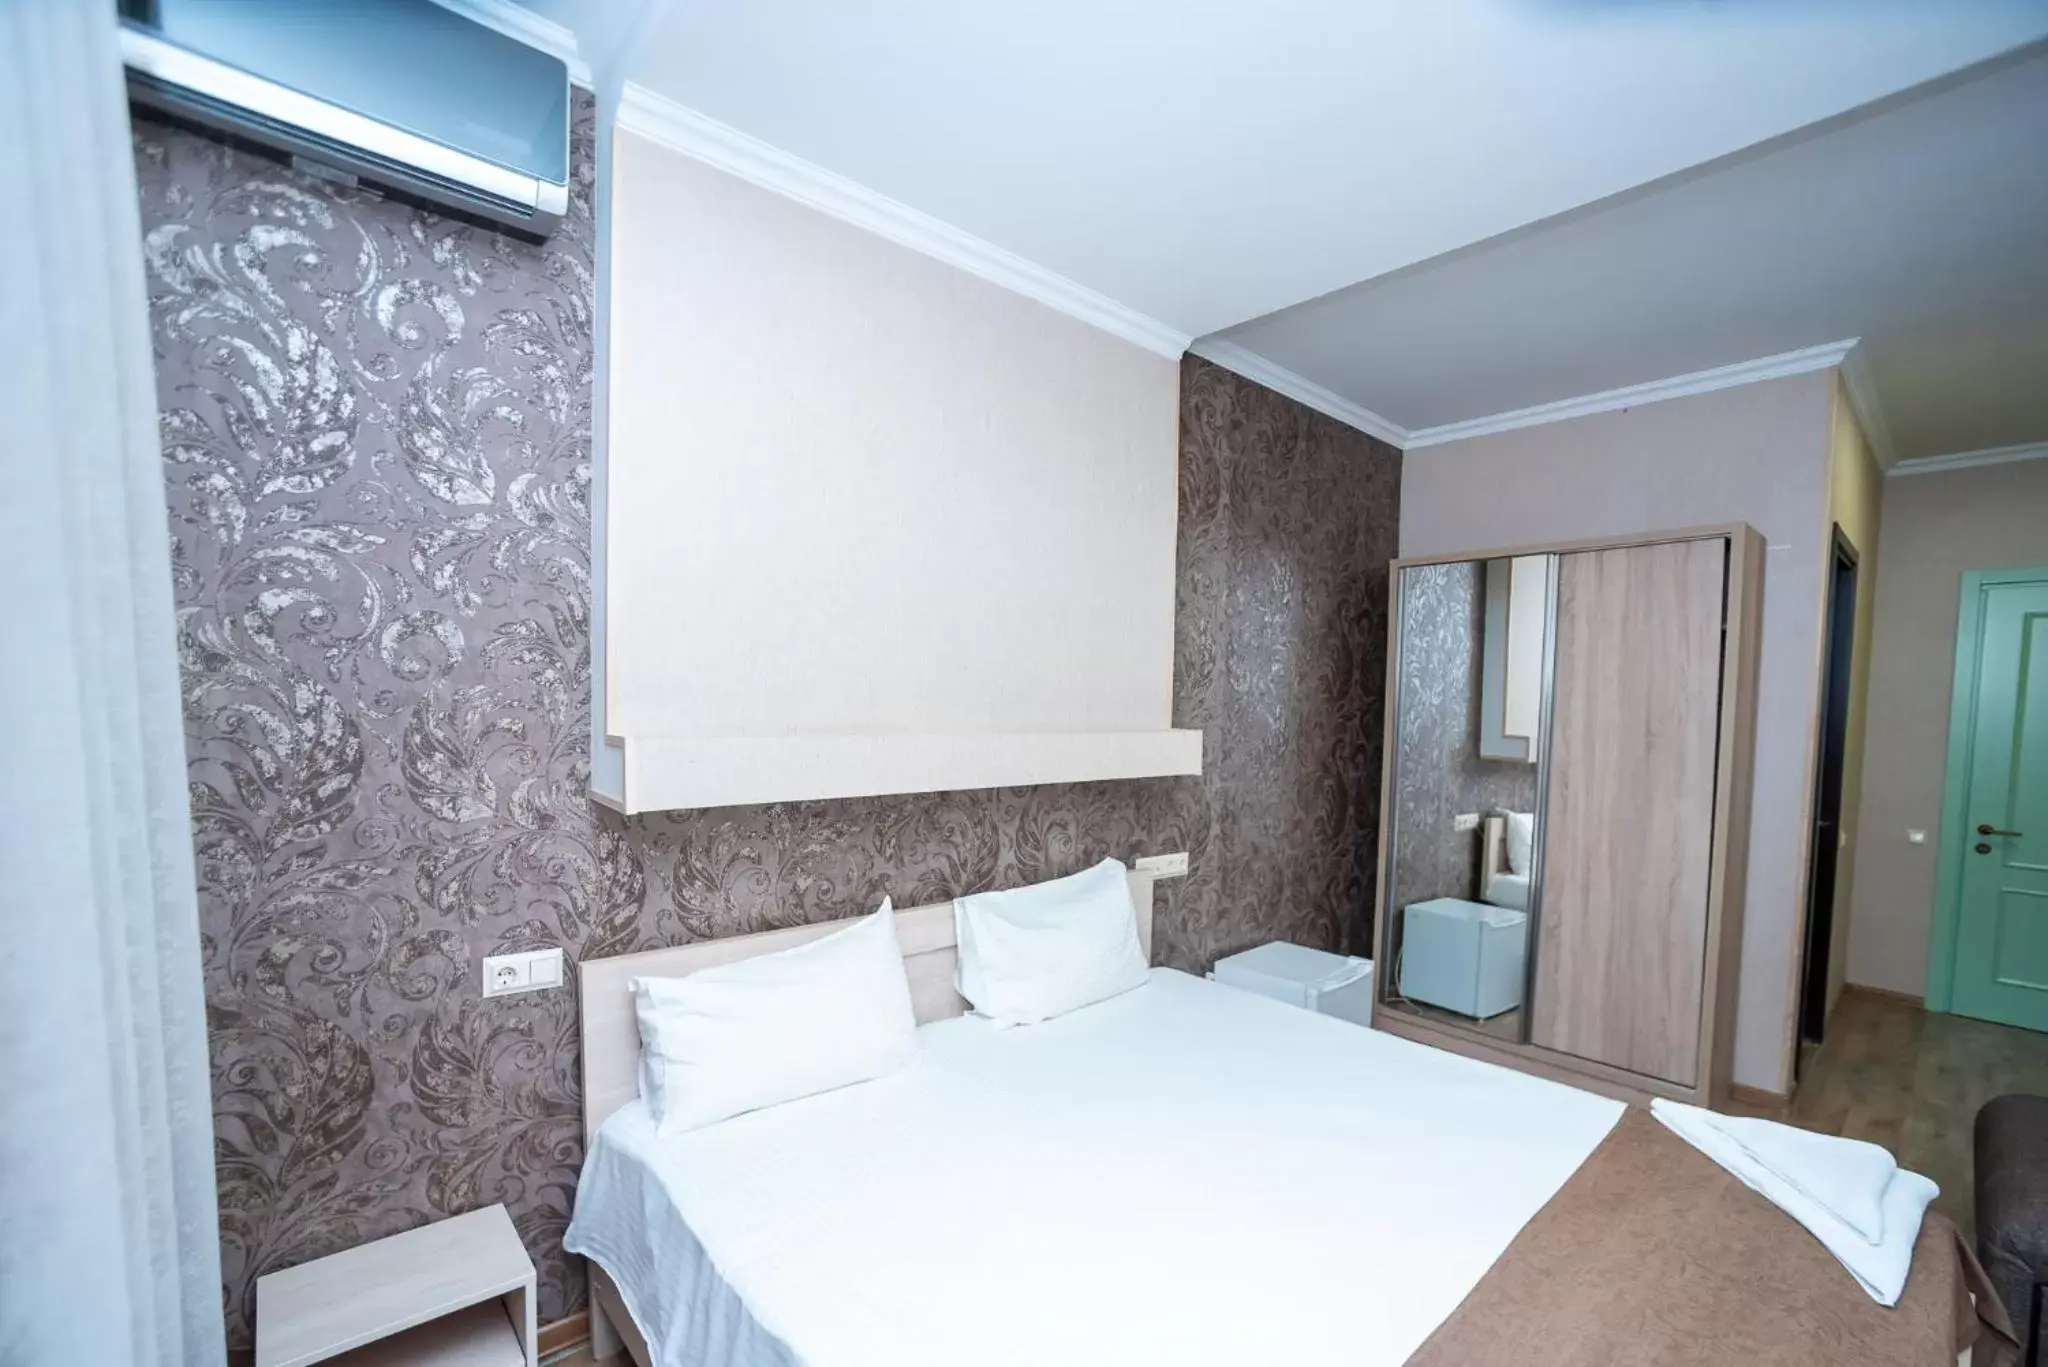 Bed in Tiflis Hotel